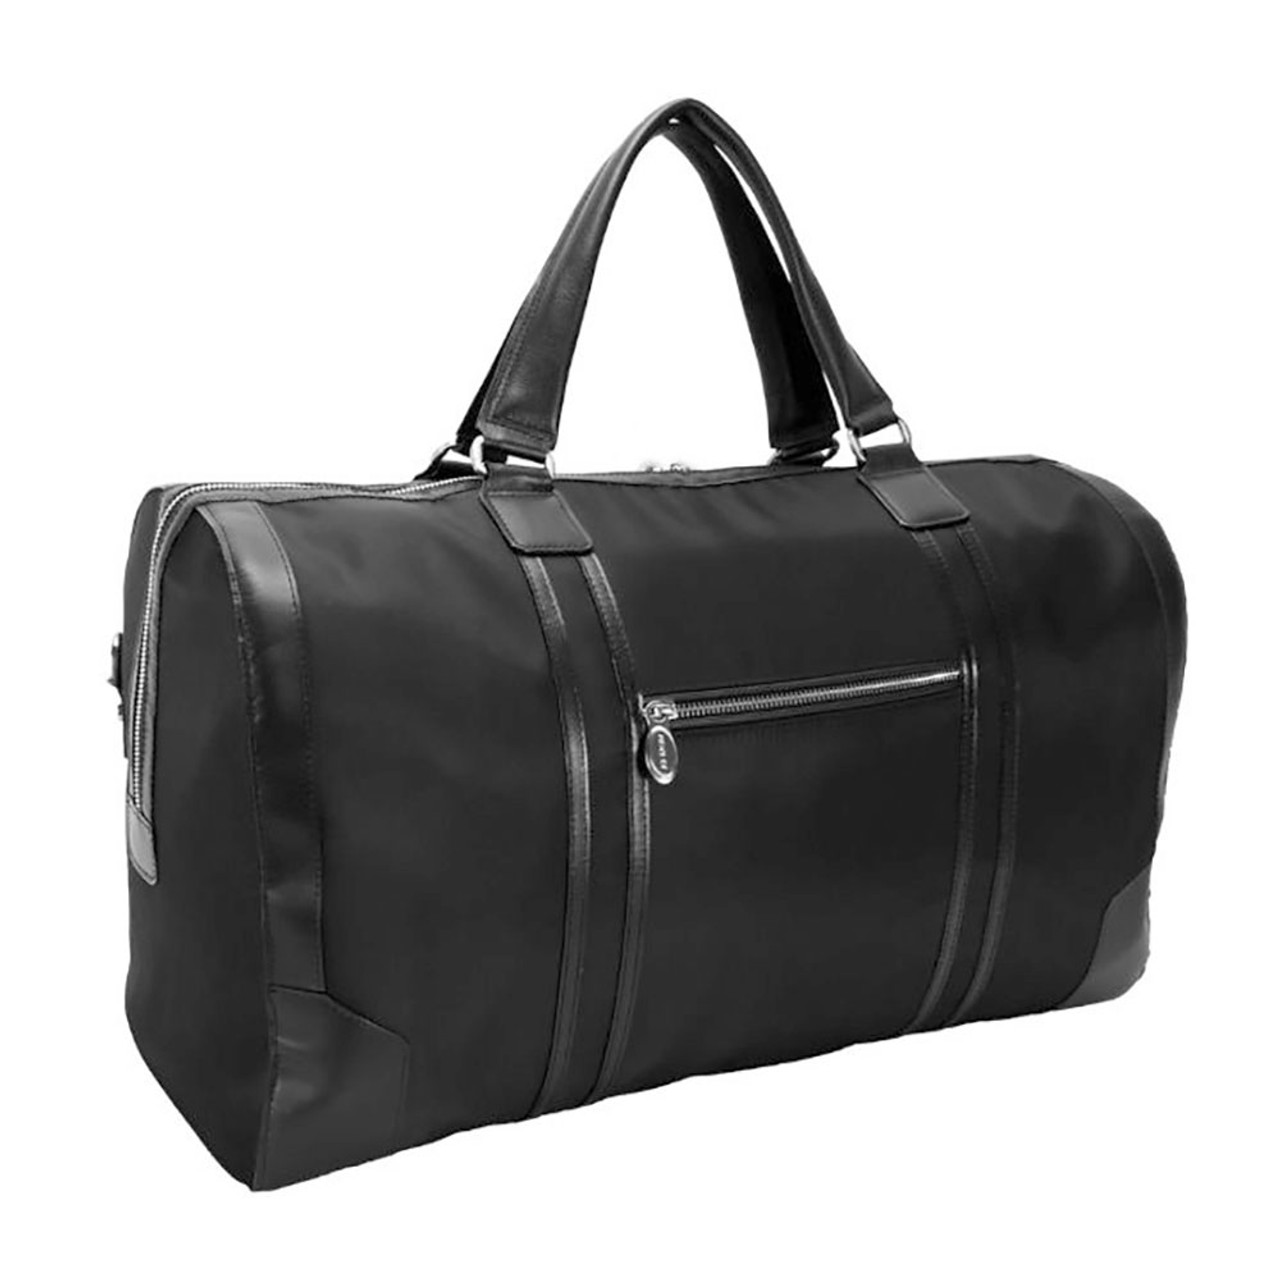 Pasadena 20" Carry-All Duffel Bag product image